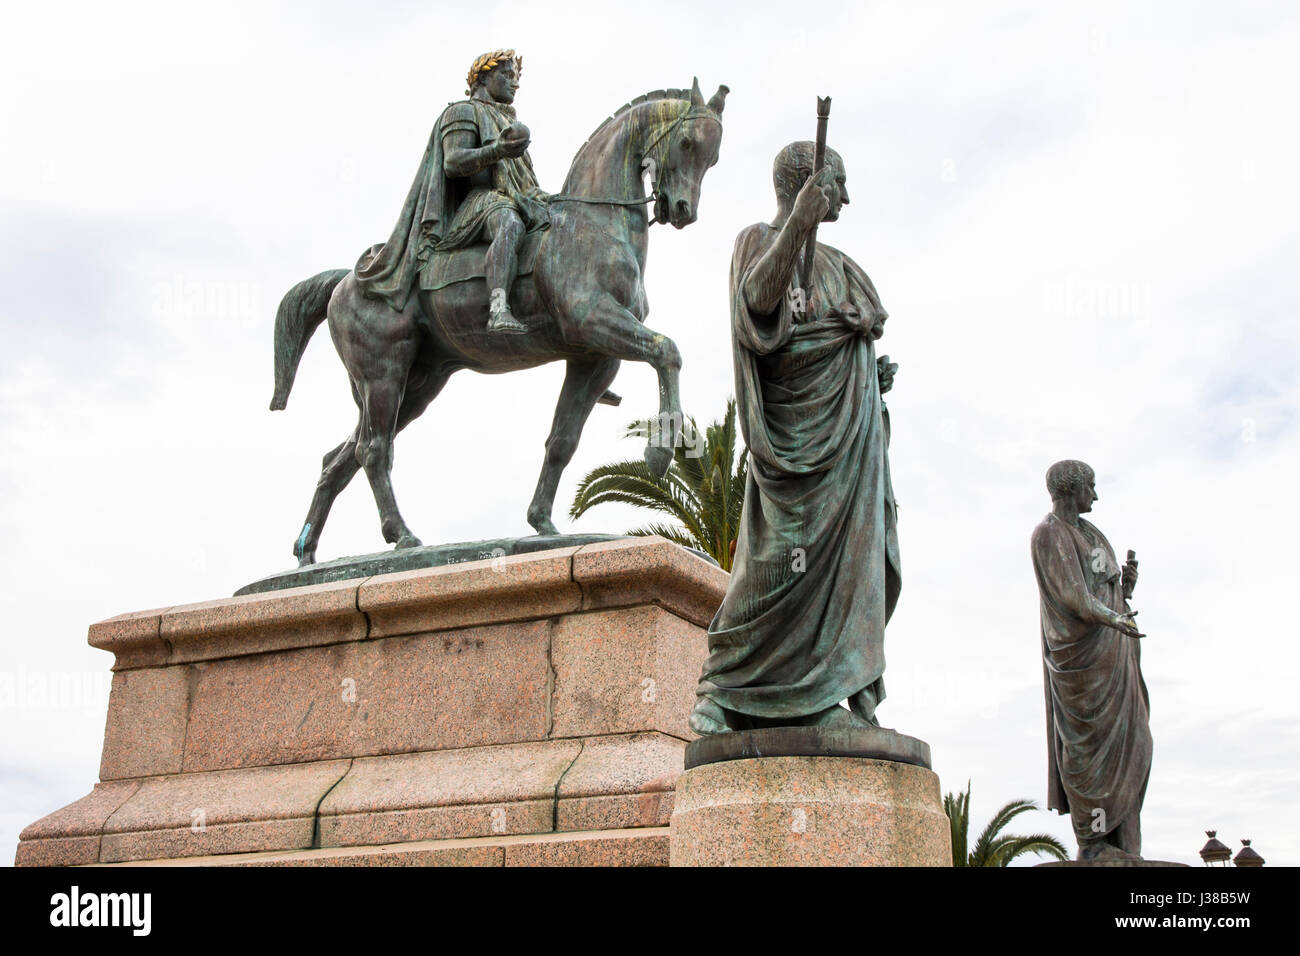 Córcega tiene hijo nativo Napoleón Bonaparte es conmemorado con muchos monumentos en Ajaccio, incluida esta estatua ecuestre en lugar de Gaulle, Ajaccio. Foto de stock